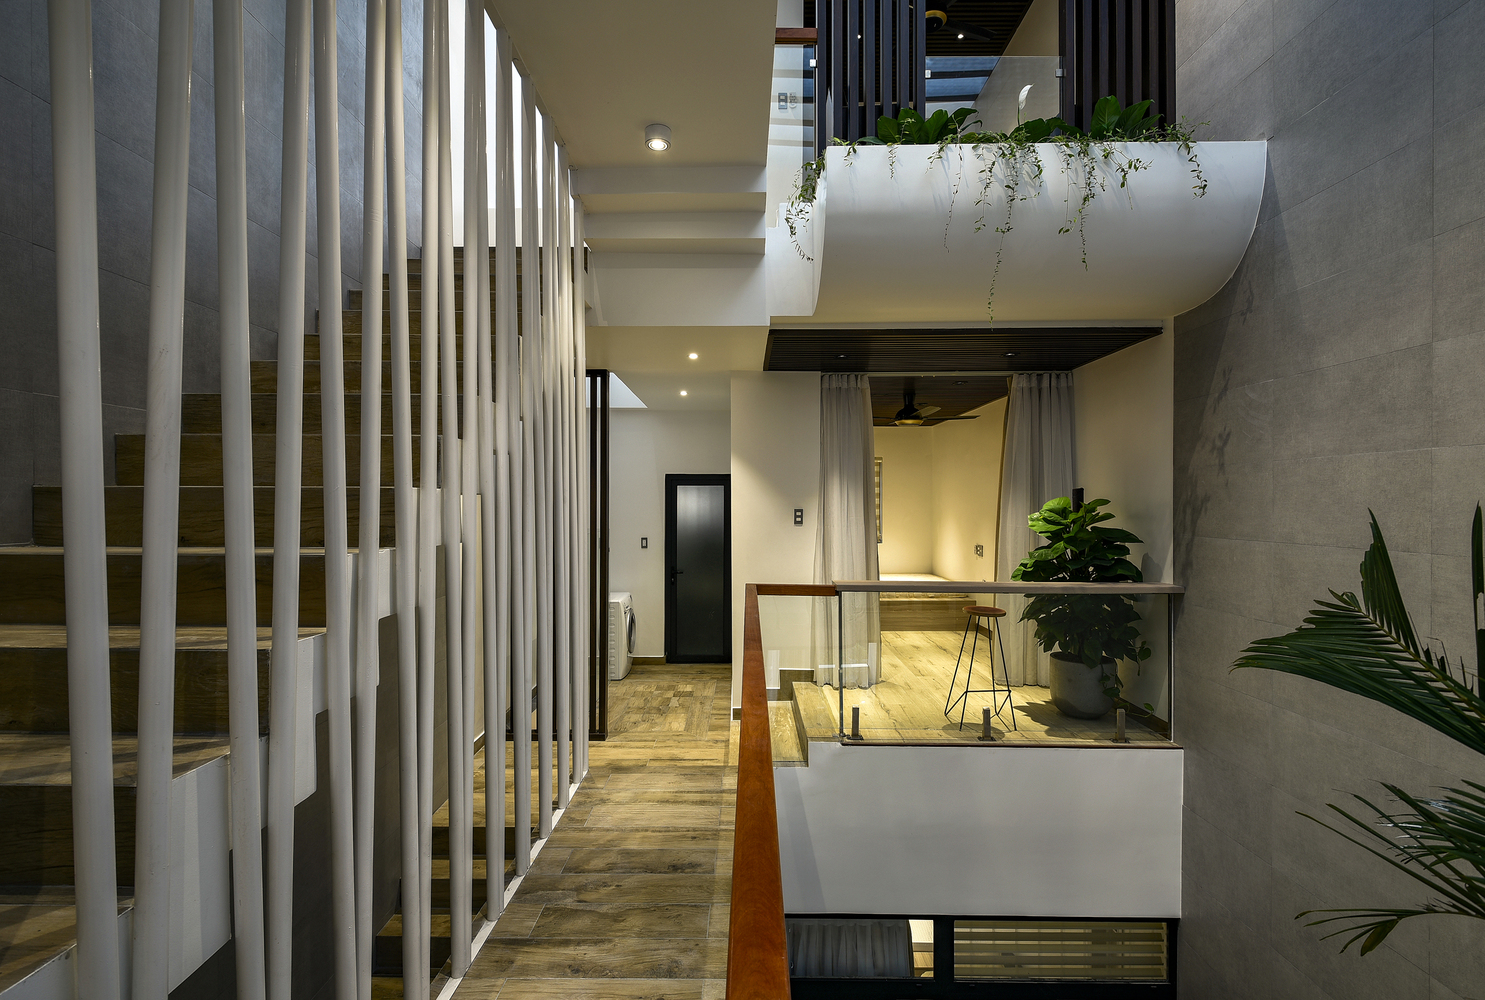 Hình ảnh các phòng riêng trong nhà phố đều có cửa mở ra khoảng thông tầng thoáng sáng, trồng cây xanh, cạnh đó là cầu thang với lan can độc đáo